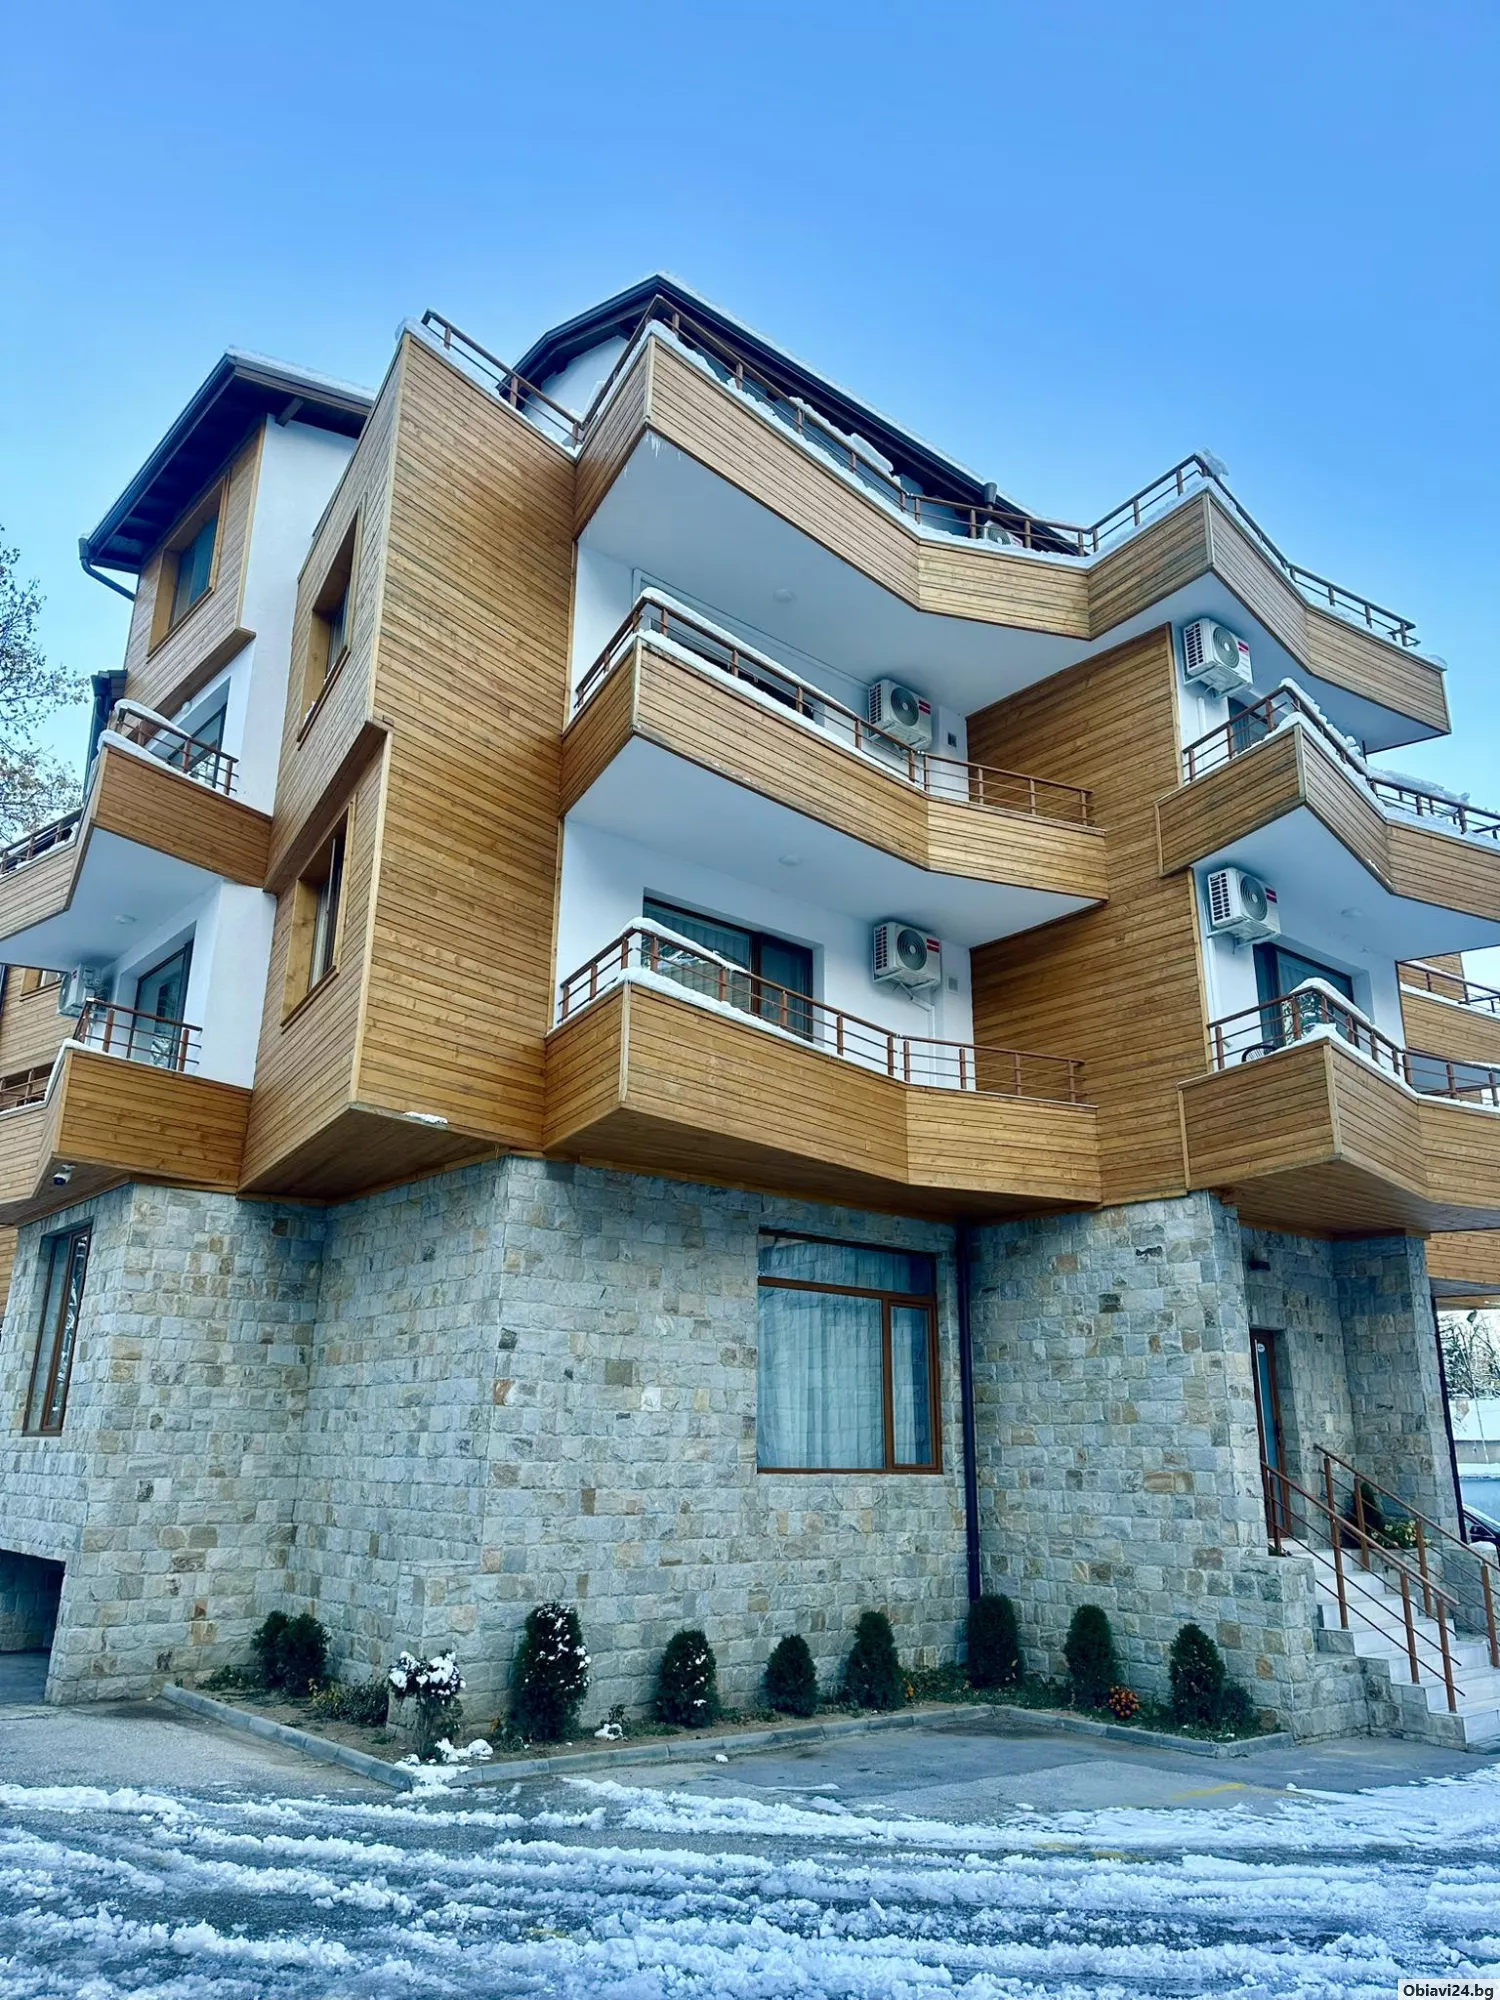 Апартаменти директно от строител Металика строй - obiavi24.bg